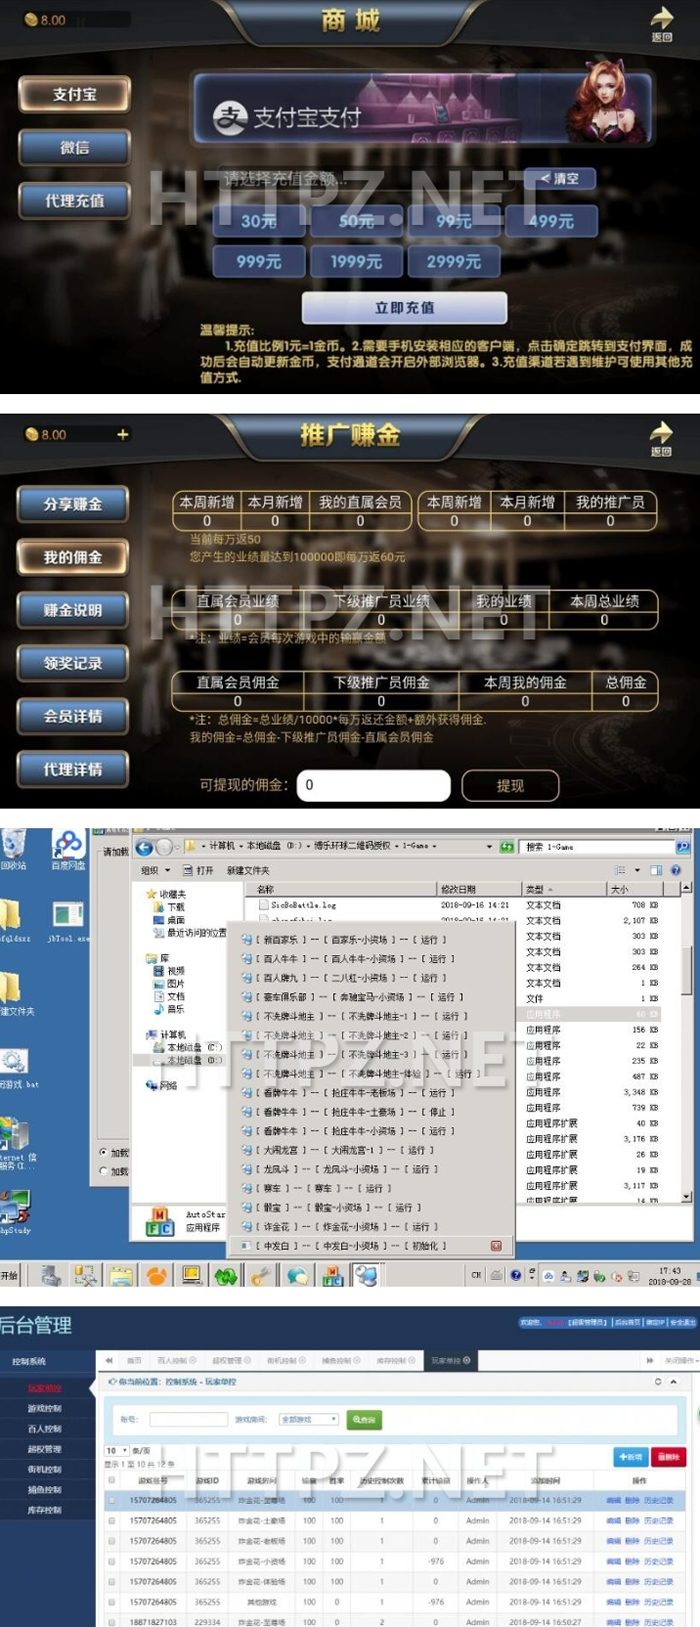 博乐ZQ娱乐游戏源码 1:1组件/网狐经典版二开源码程序插图(1)